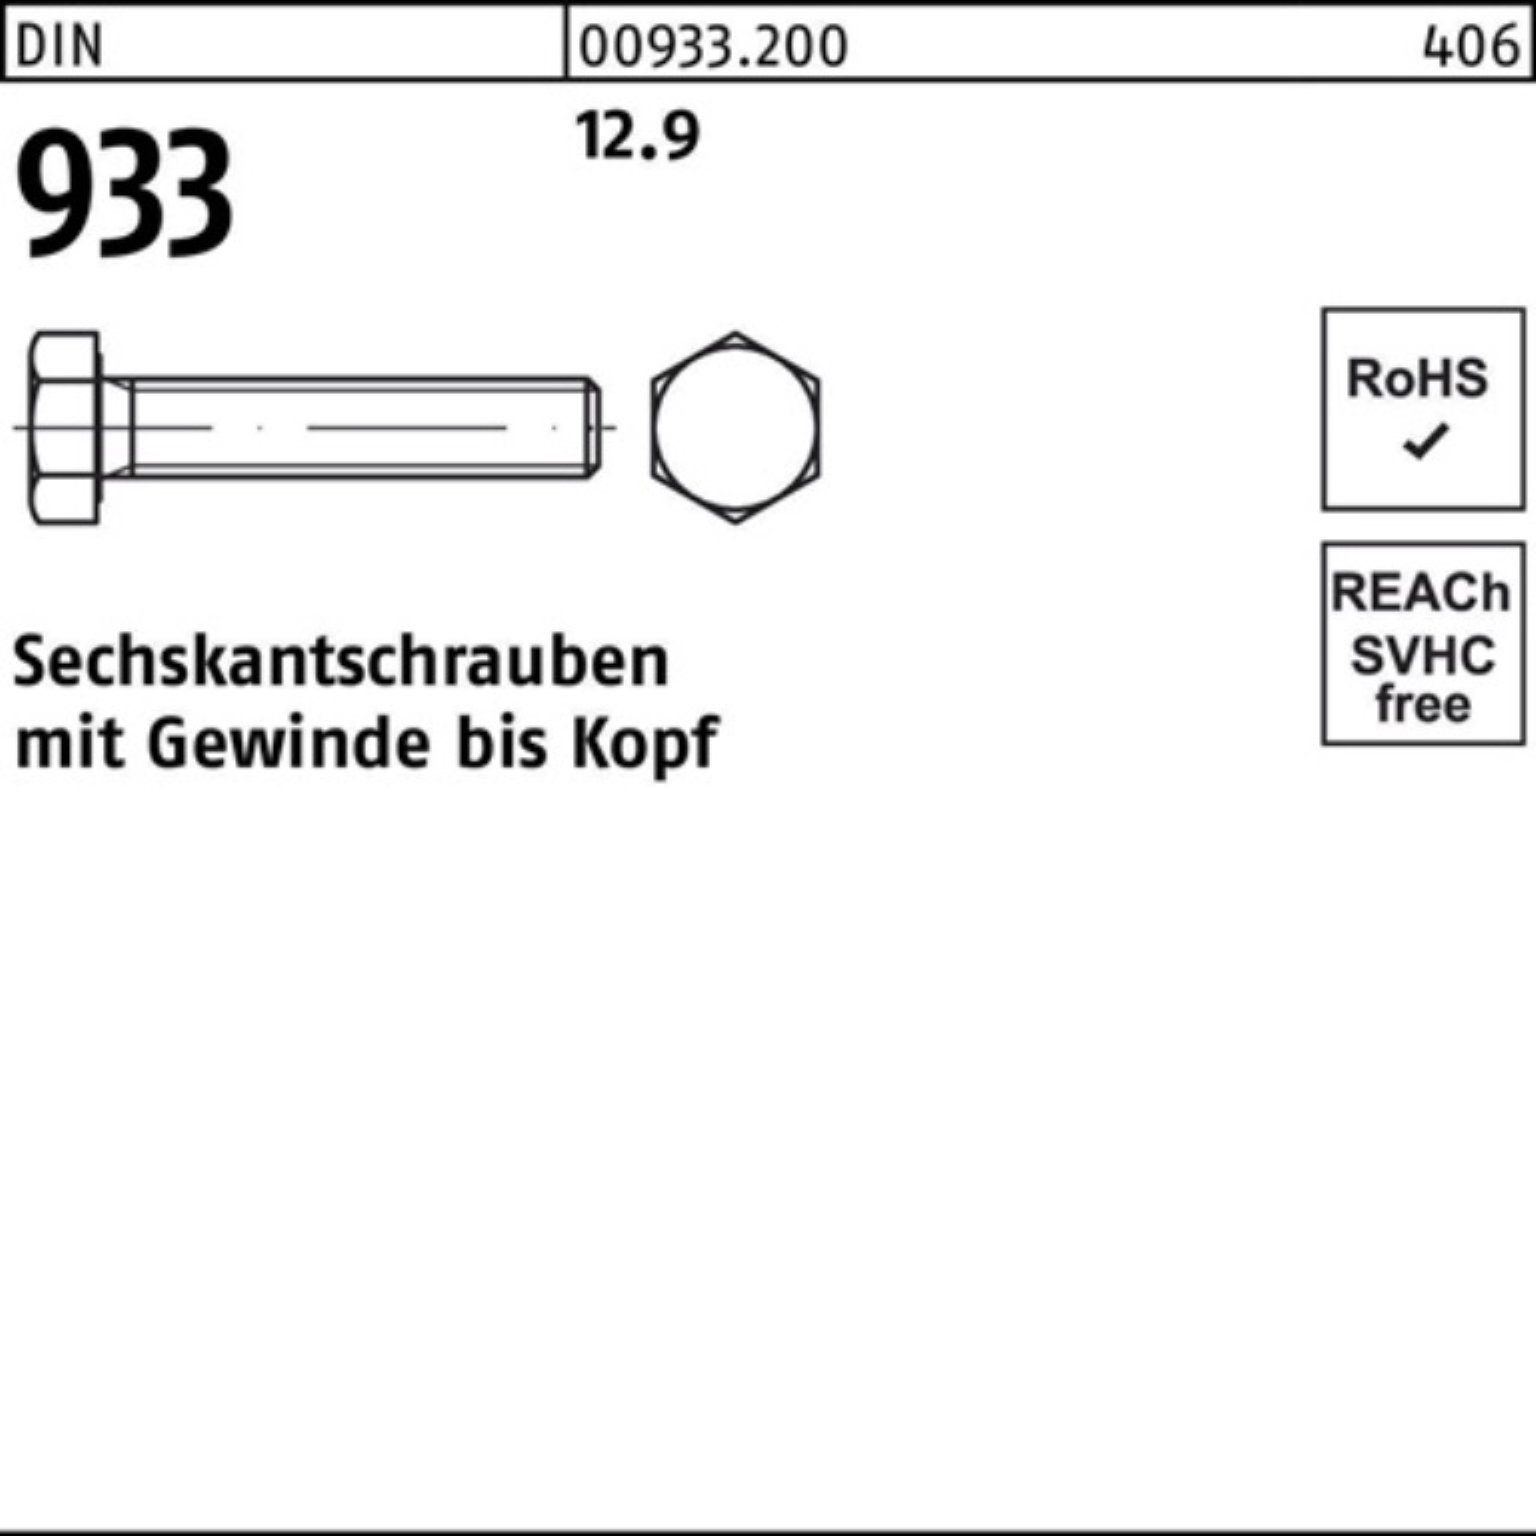 Reyher Sechskantschraube M20x DIN DIN 100er 933 933 Sechskantschraube 50 12.9 VG Pack 25 Stück